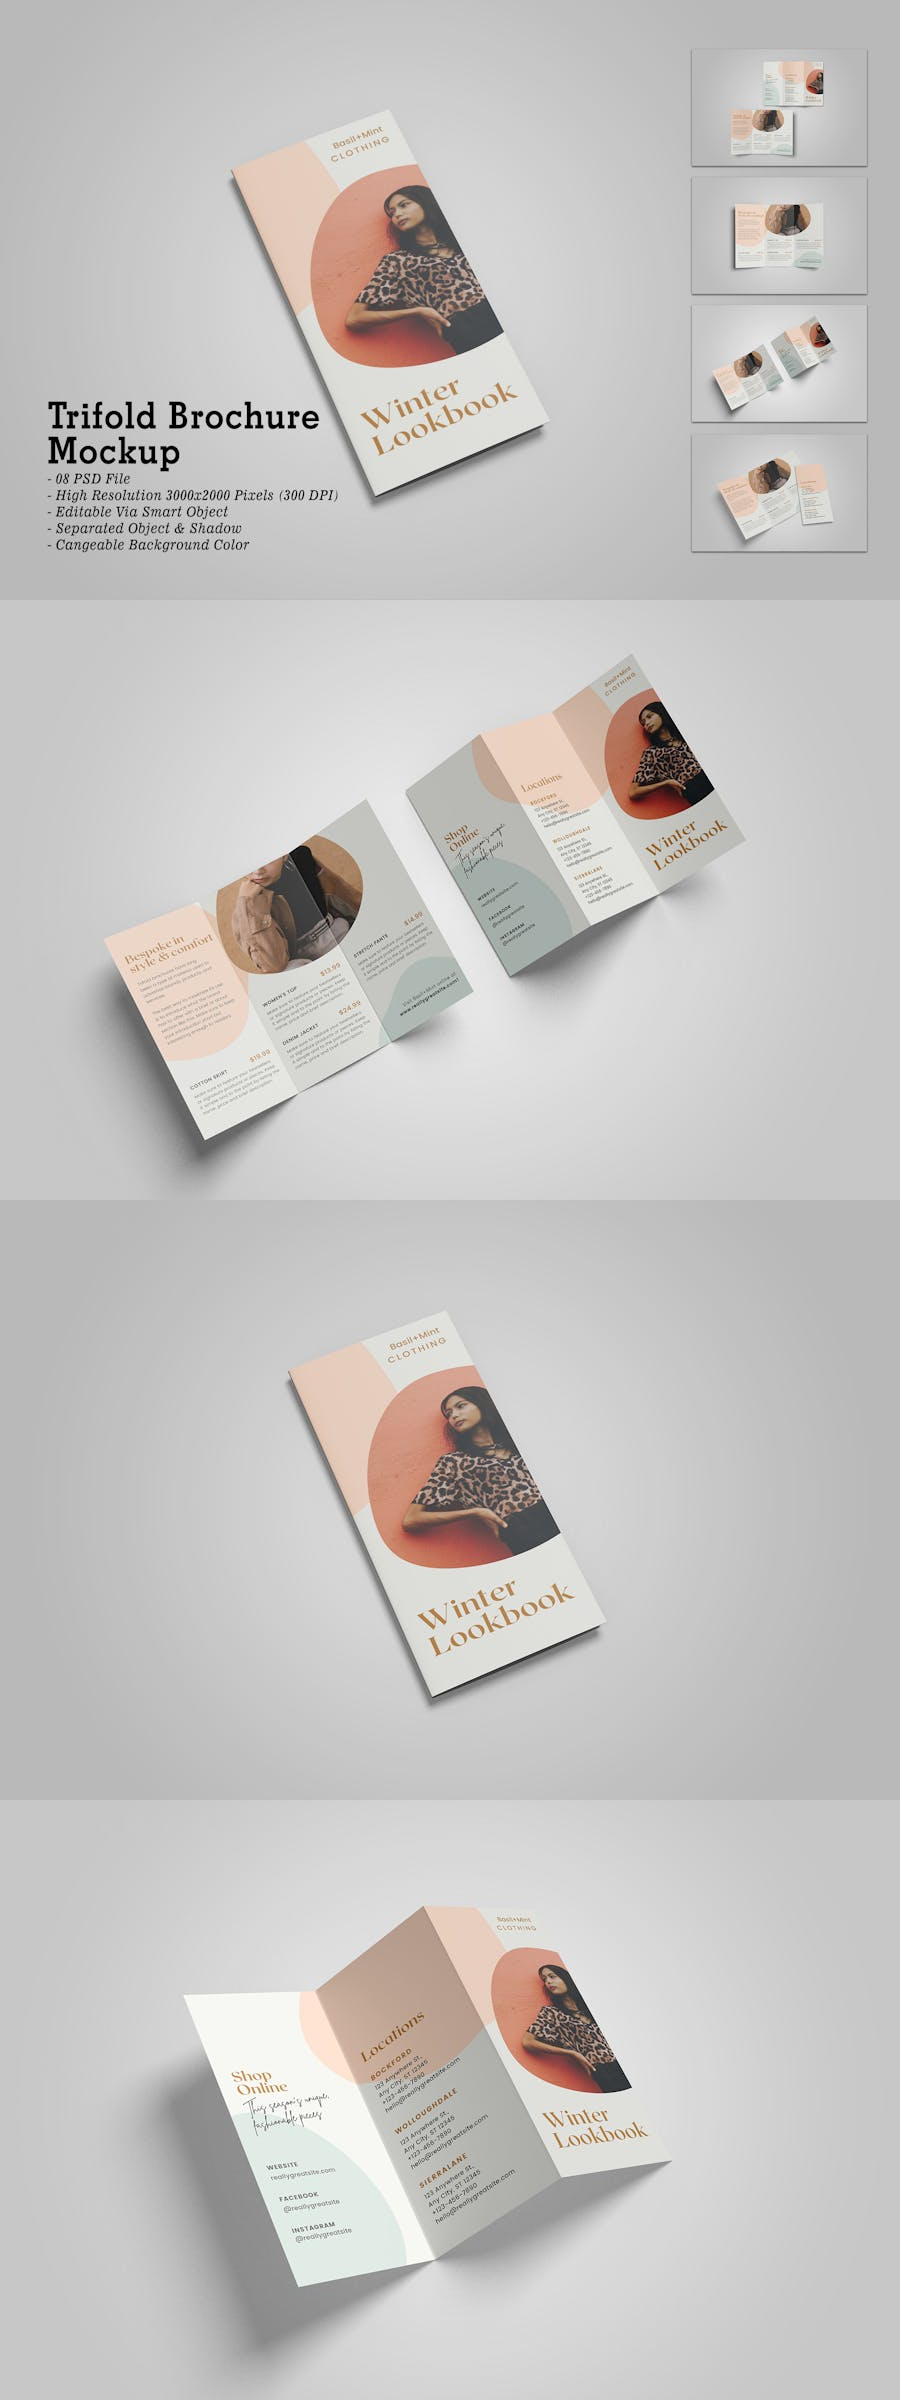 trifold brochure mockup brochure design template mock-up Mockup mockups psd branding 